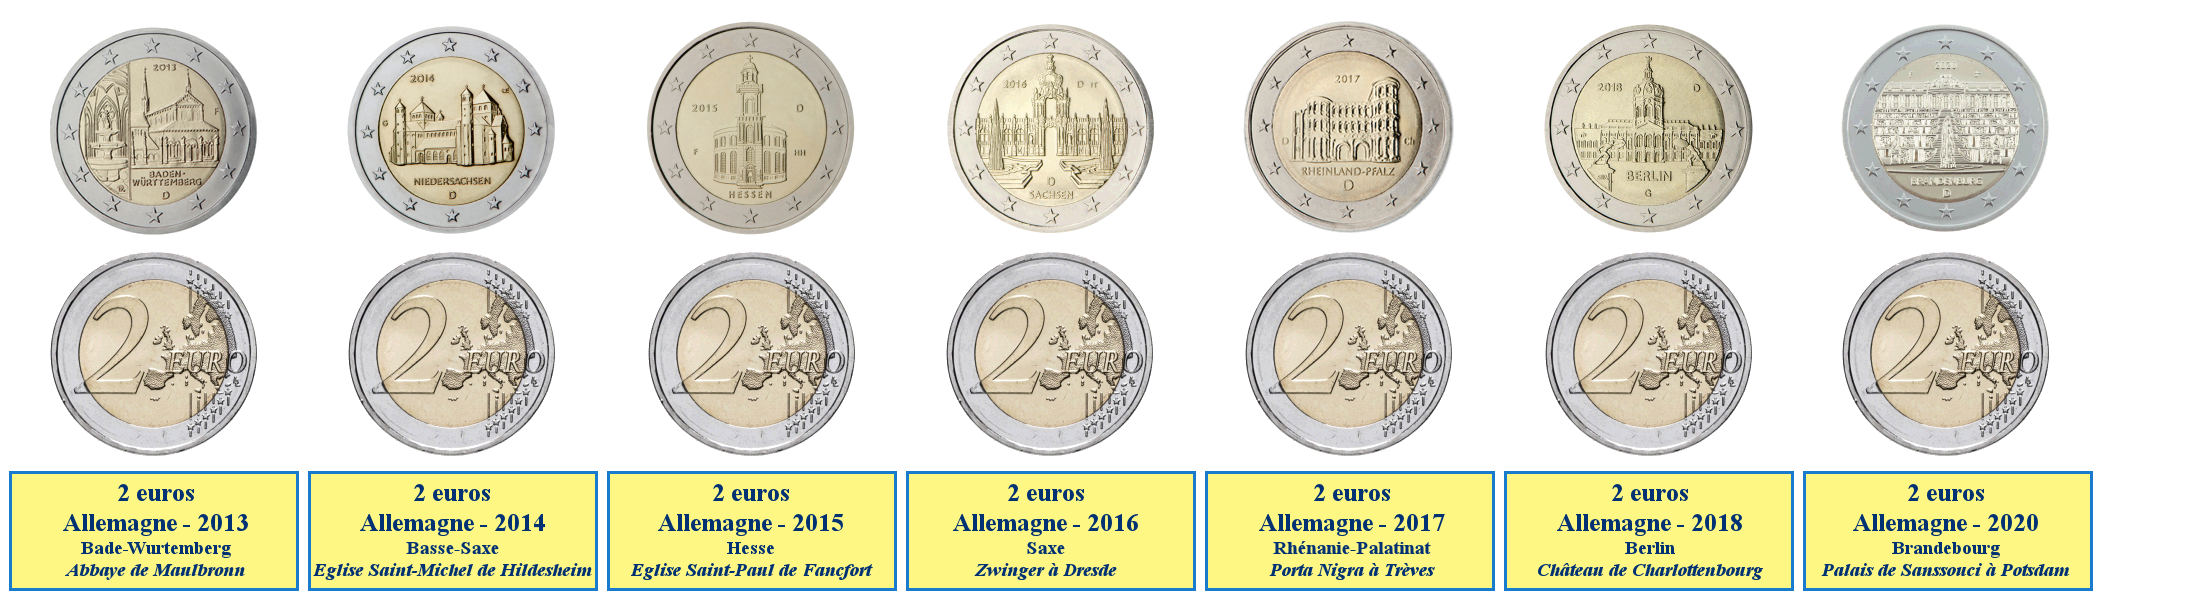 Photos de pièces de monnaies de 2 euros commémoratives des Länder allemands 2013-2020